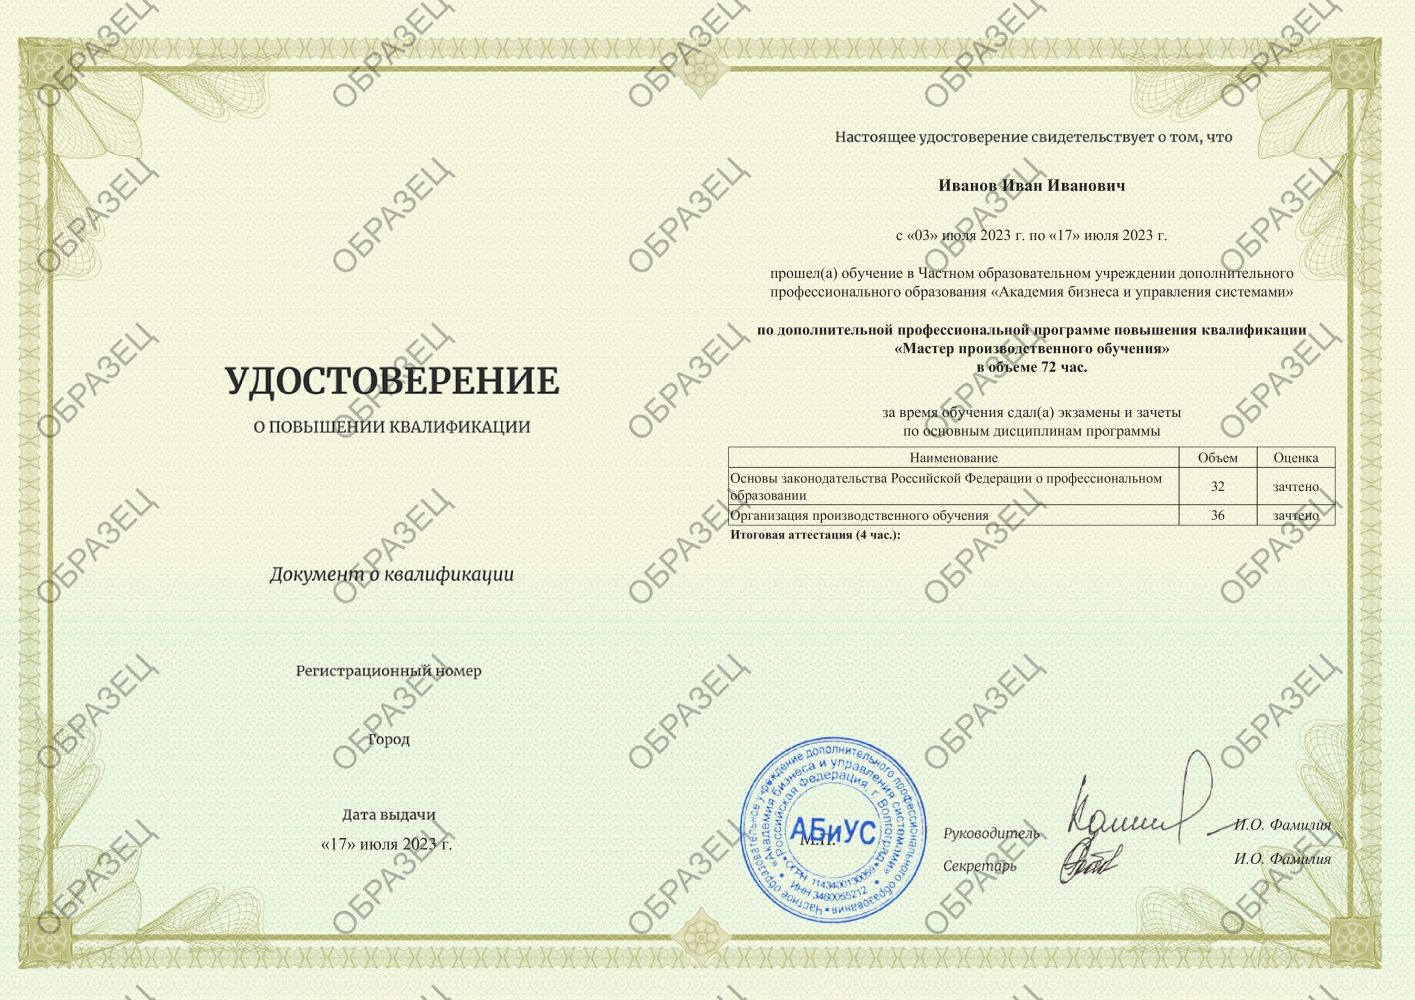 Удостоверение Мастер производственного обучения 72 часа  4313 руб.